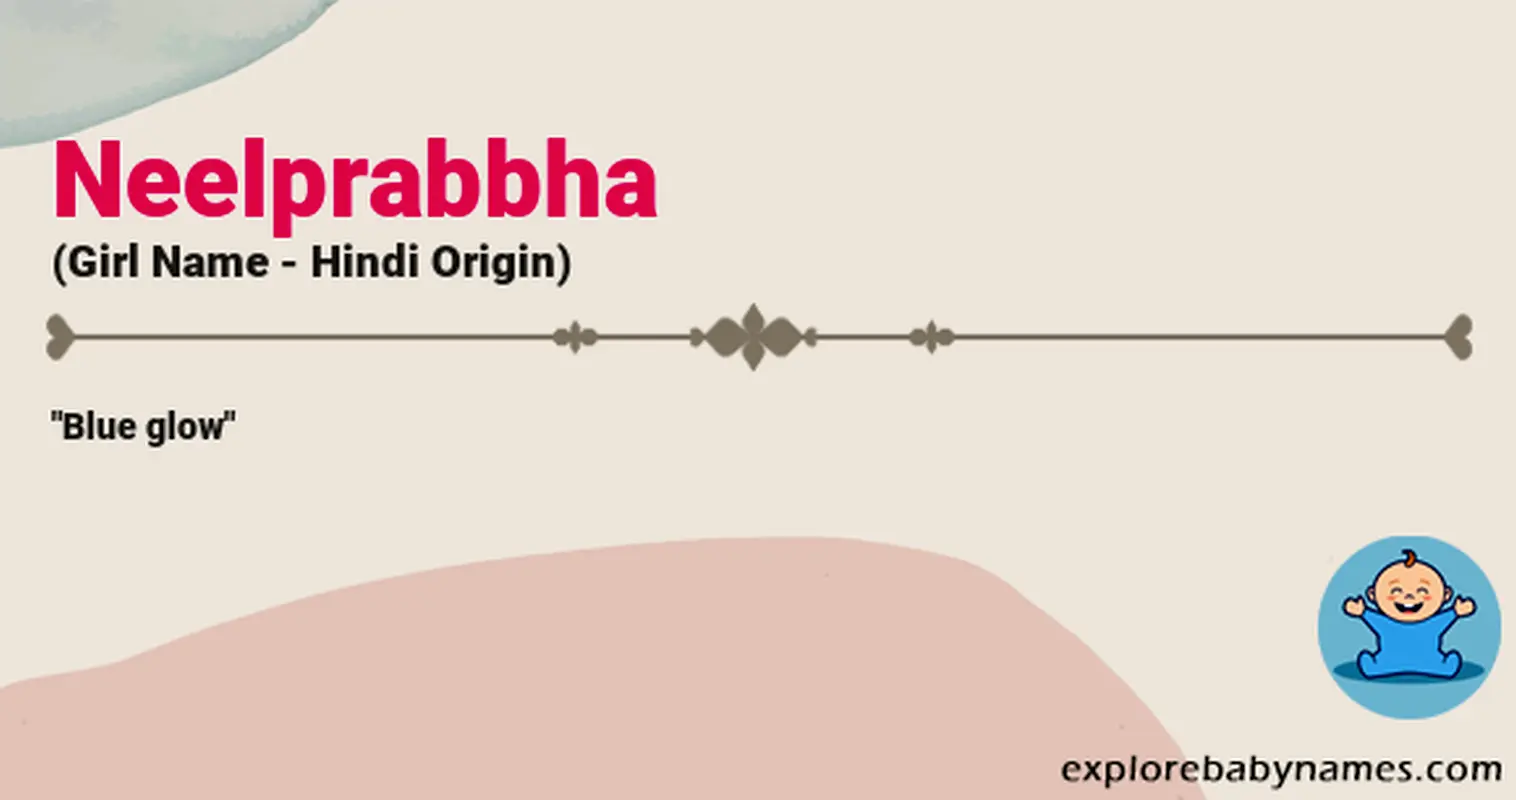 Meaning of Neelprabbha